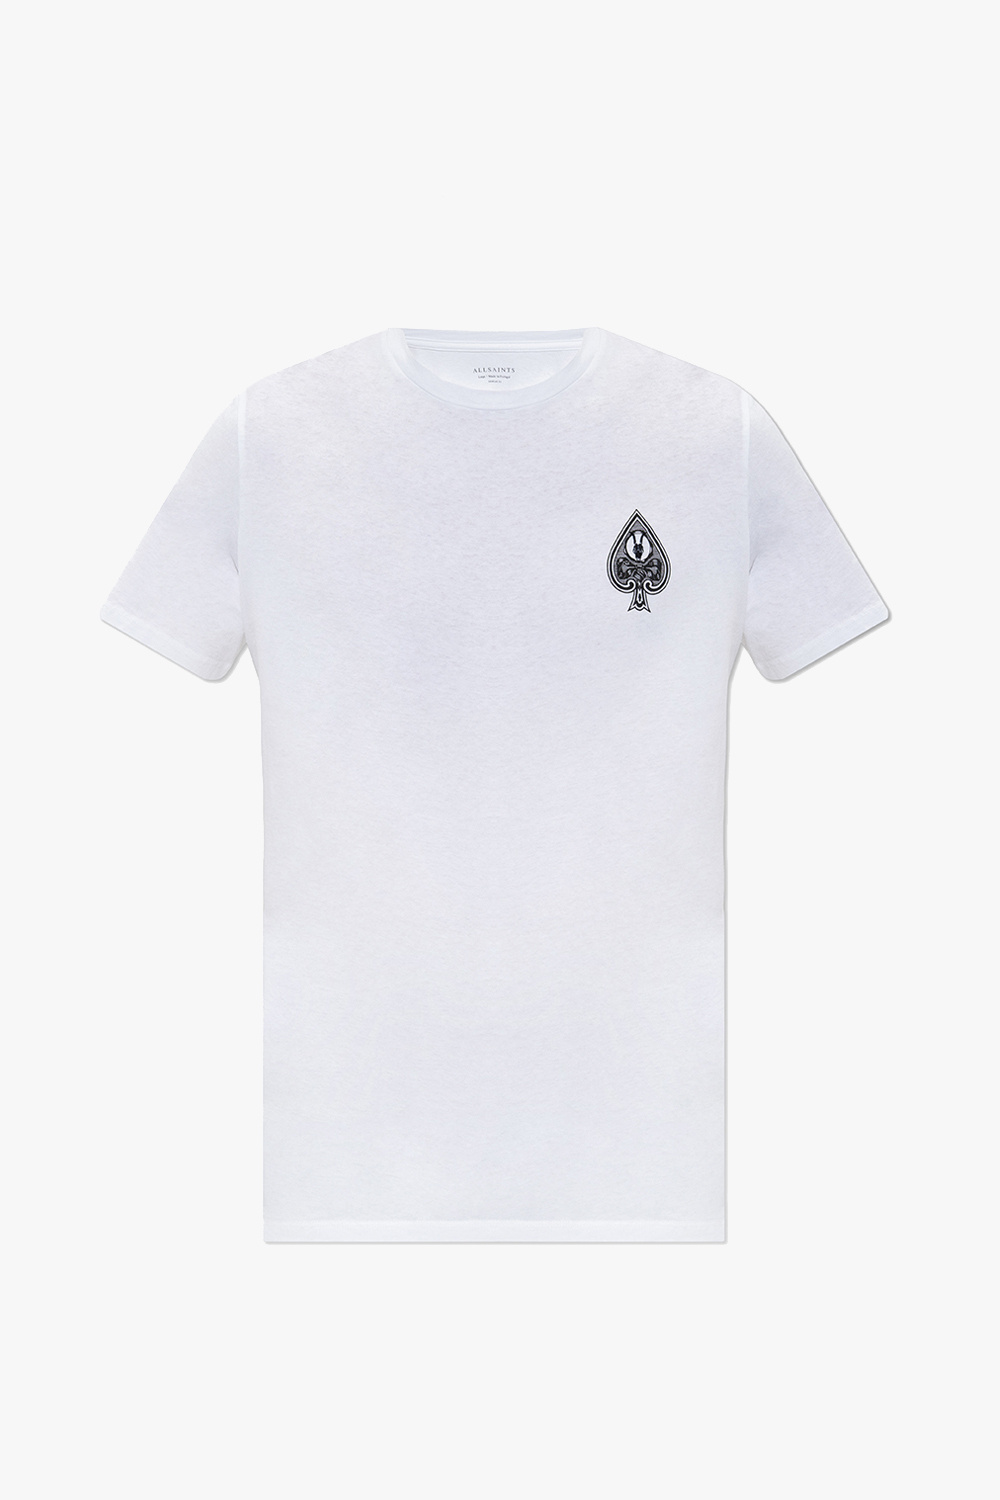 AllSaints ‘Ace’ T-shirt